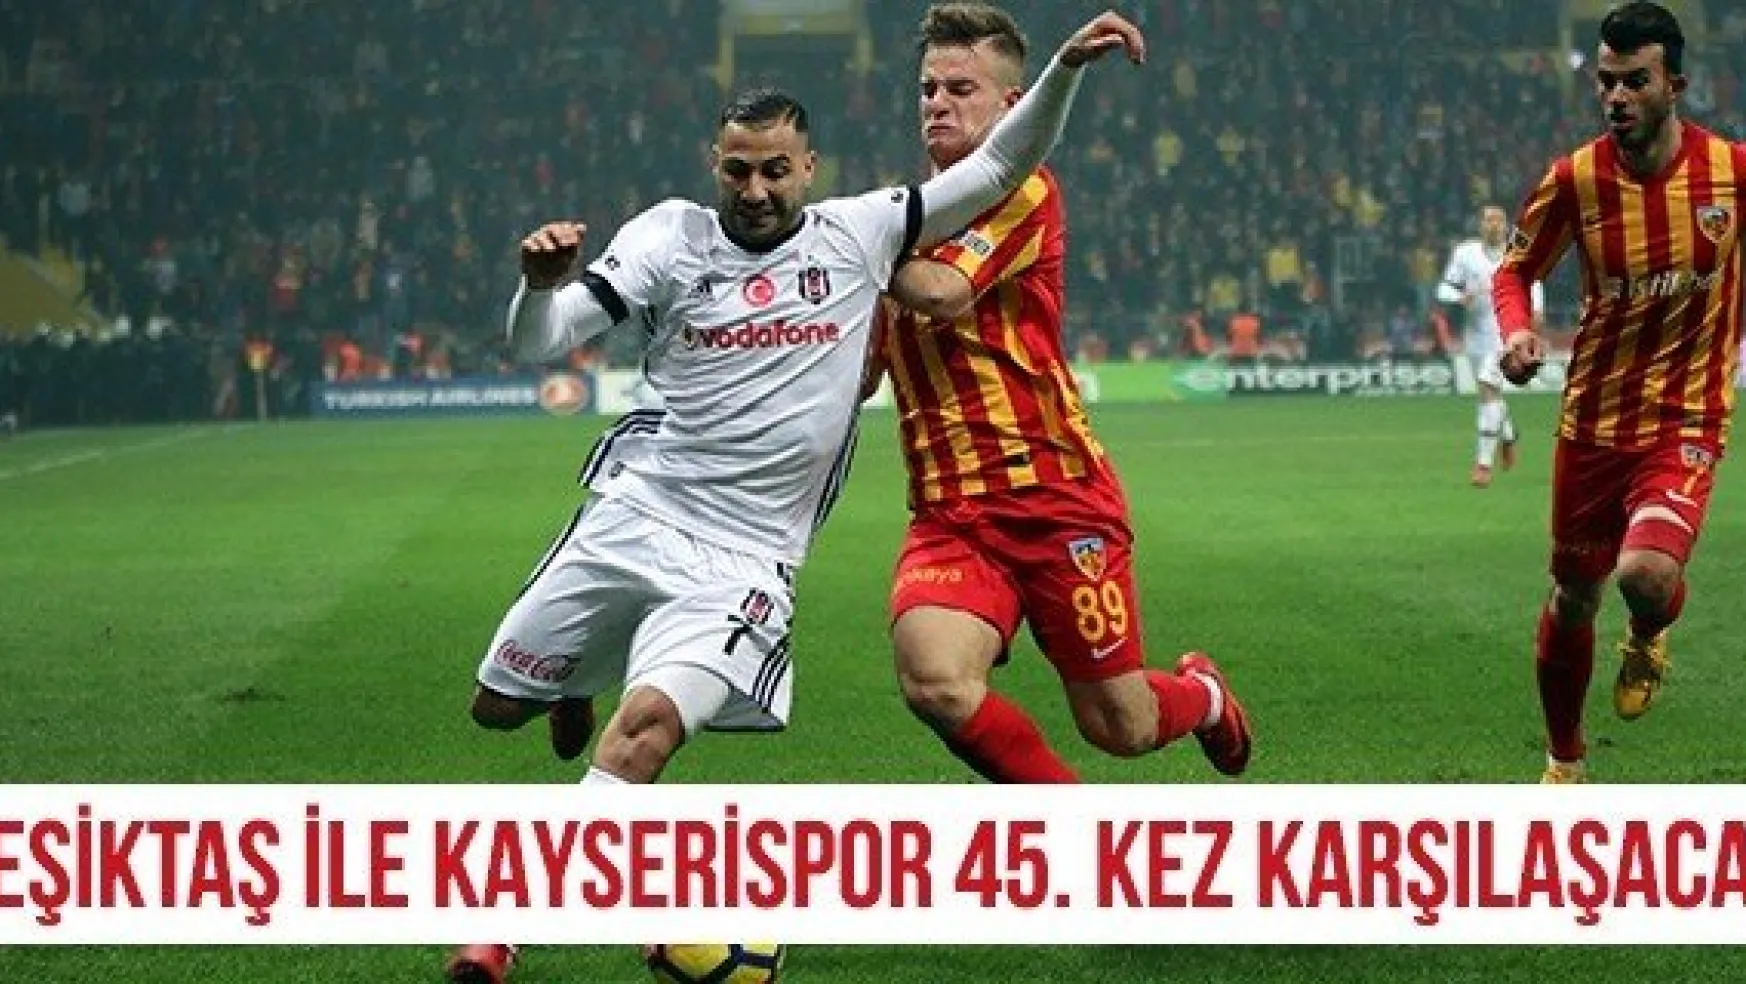 Beşiktaş ile Kayserispor 45. kez karşılaşacak